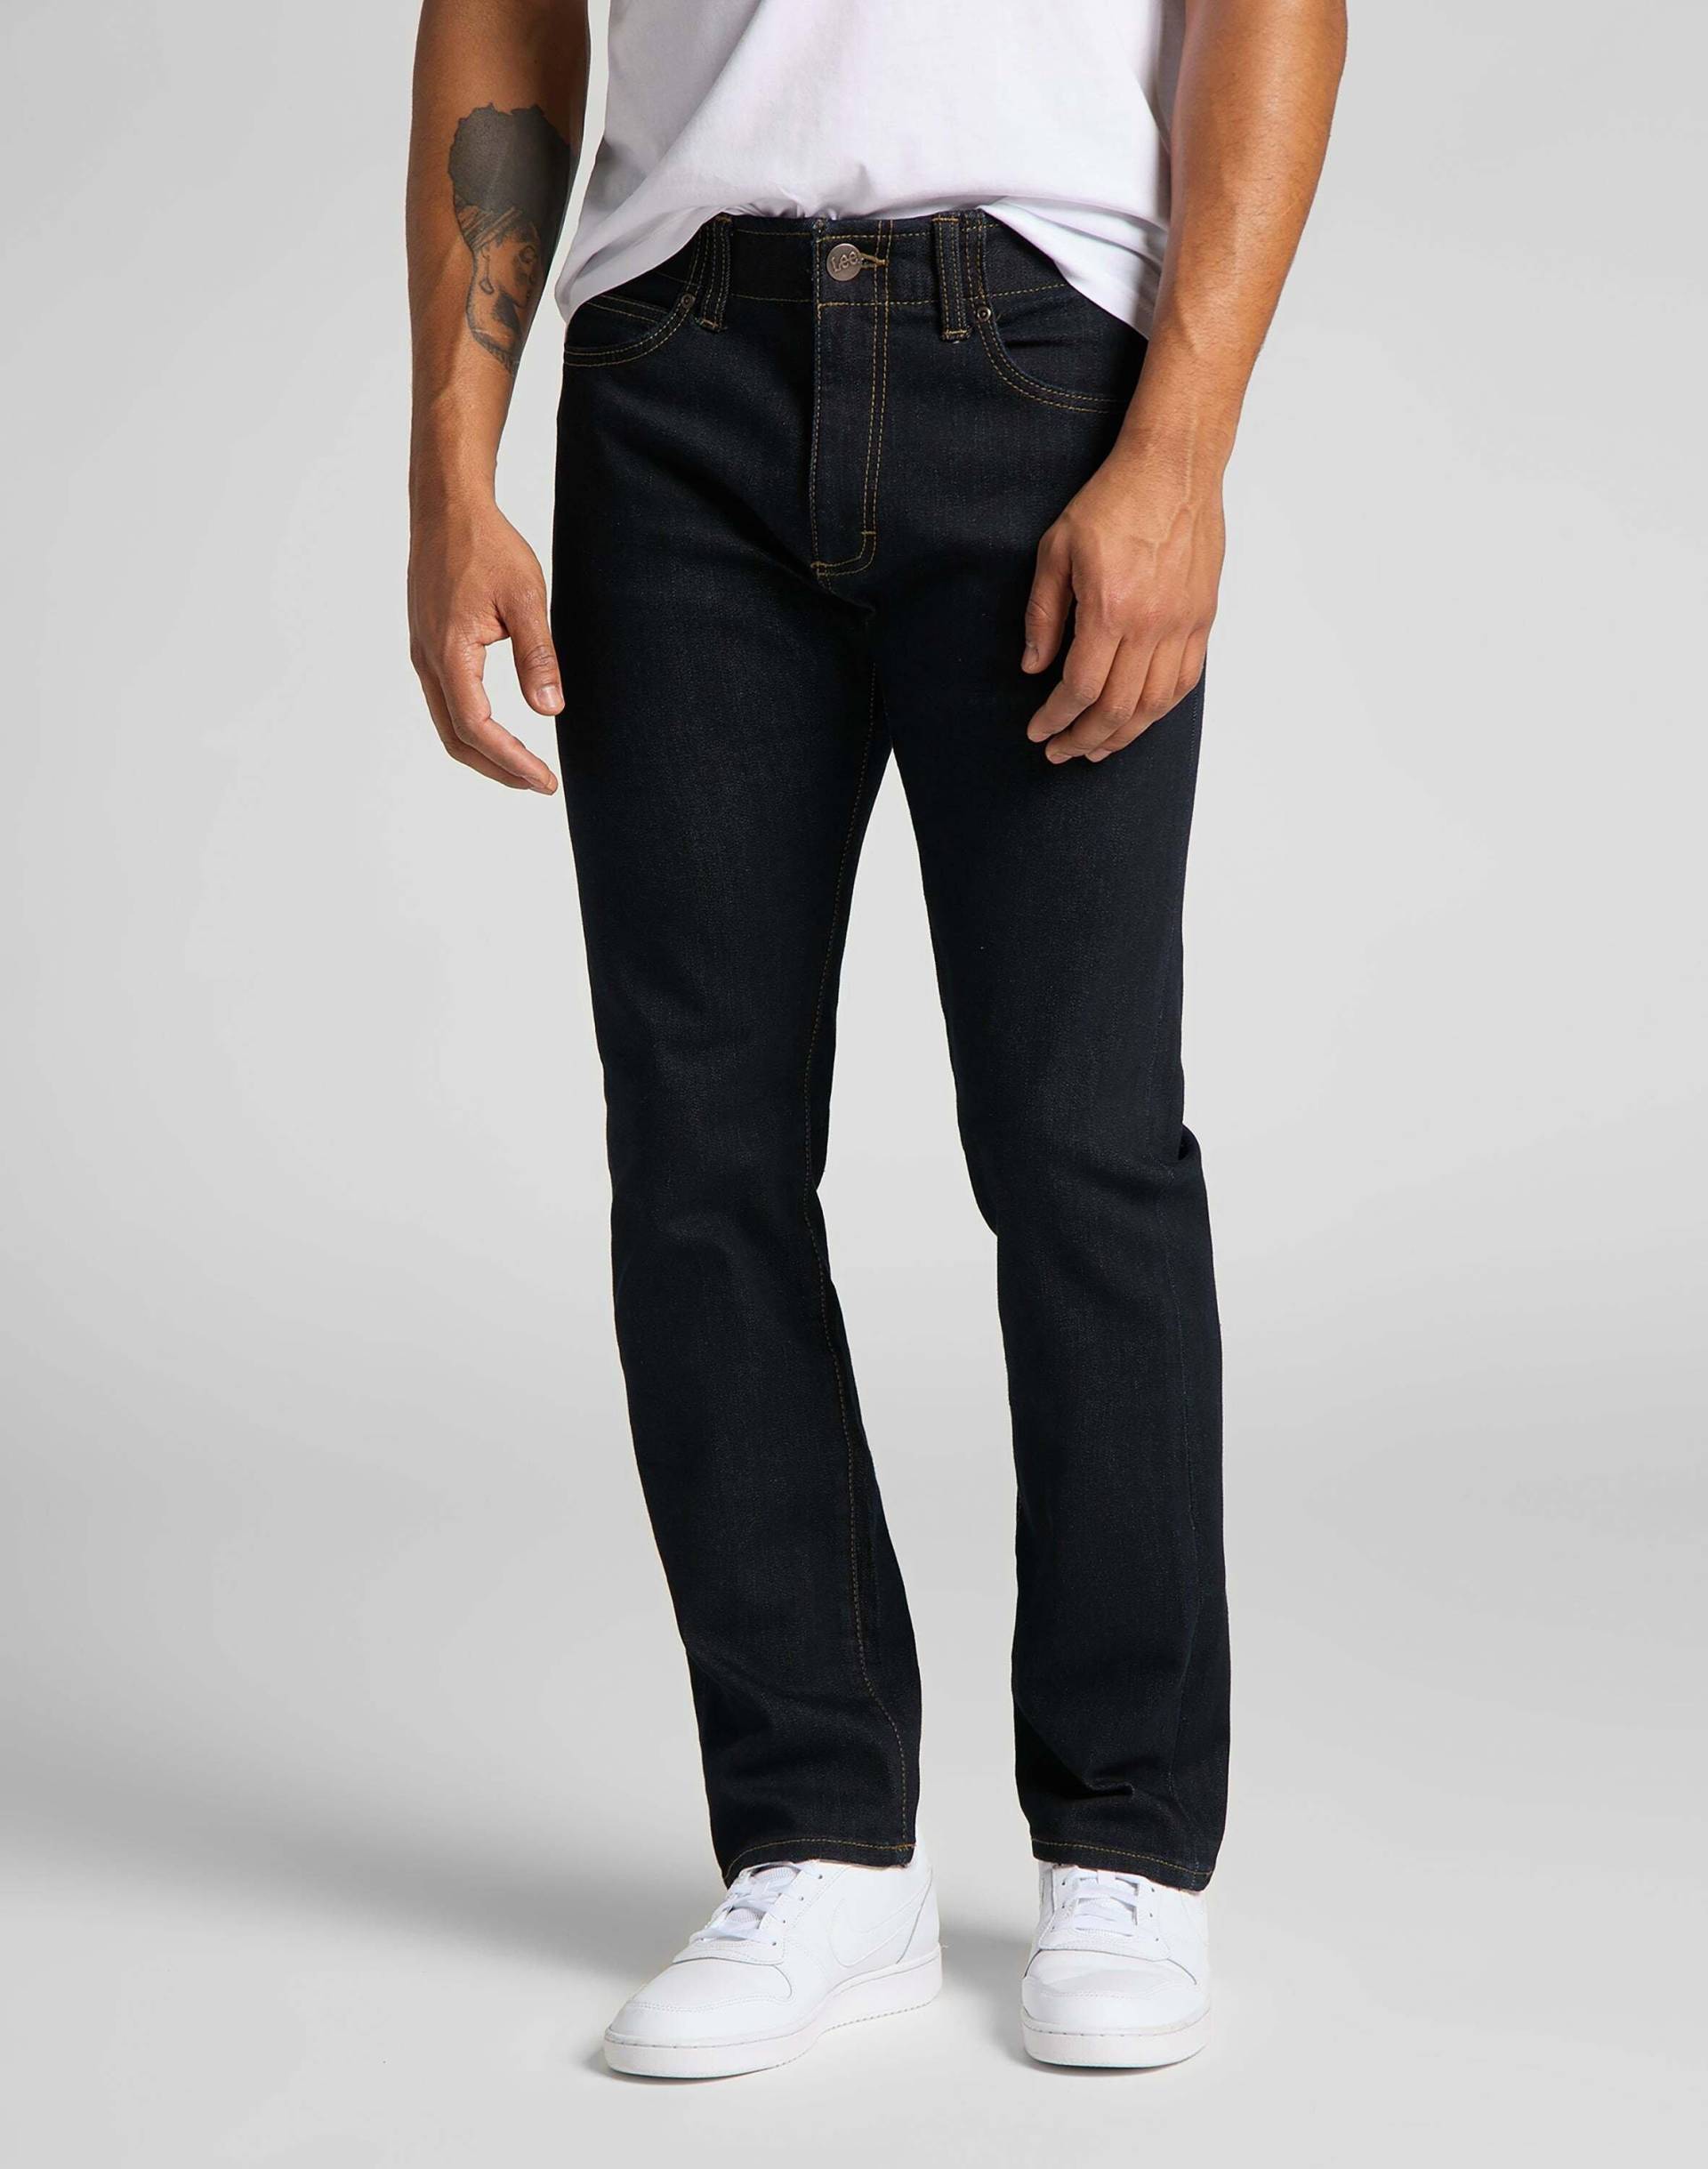 Jeans Slim Fit Mvp Herren Blau L34/W38 von Lee